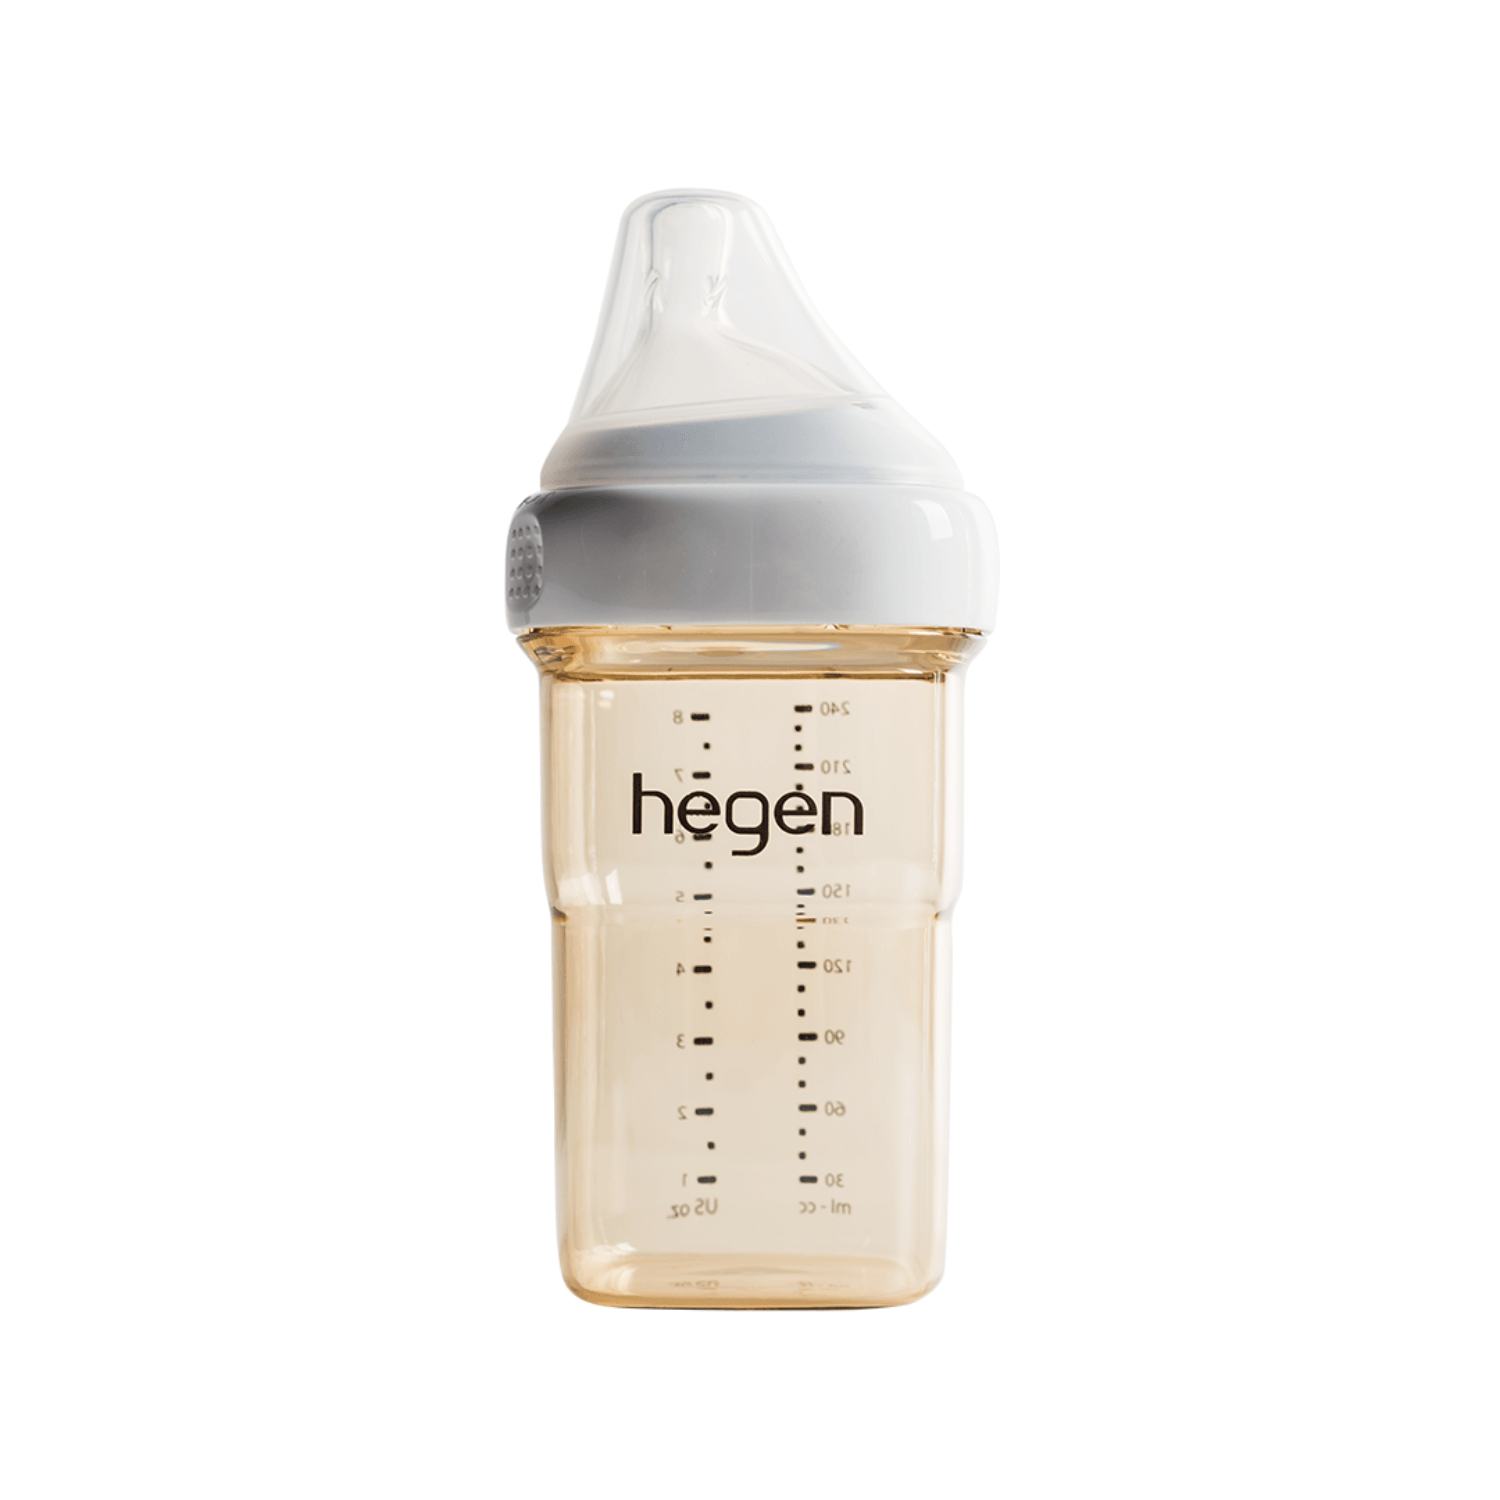 Hegen PCTO™ 240ml/8oz Feeding Bottle PPSU with Medium Flow Teat (3 to 6 months)